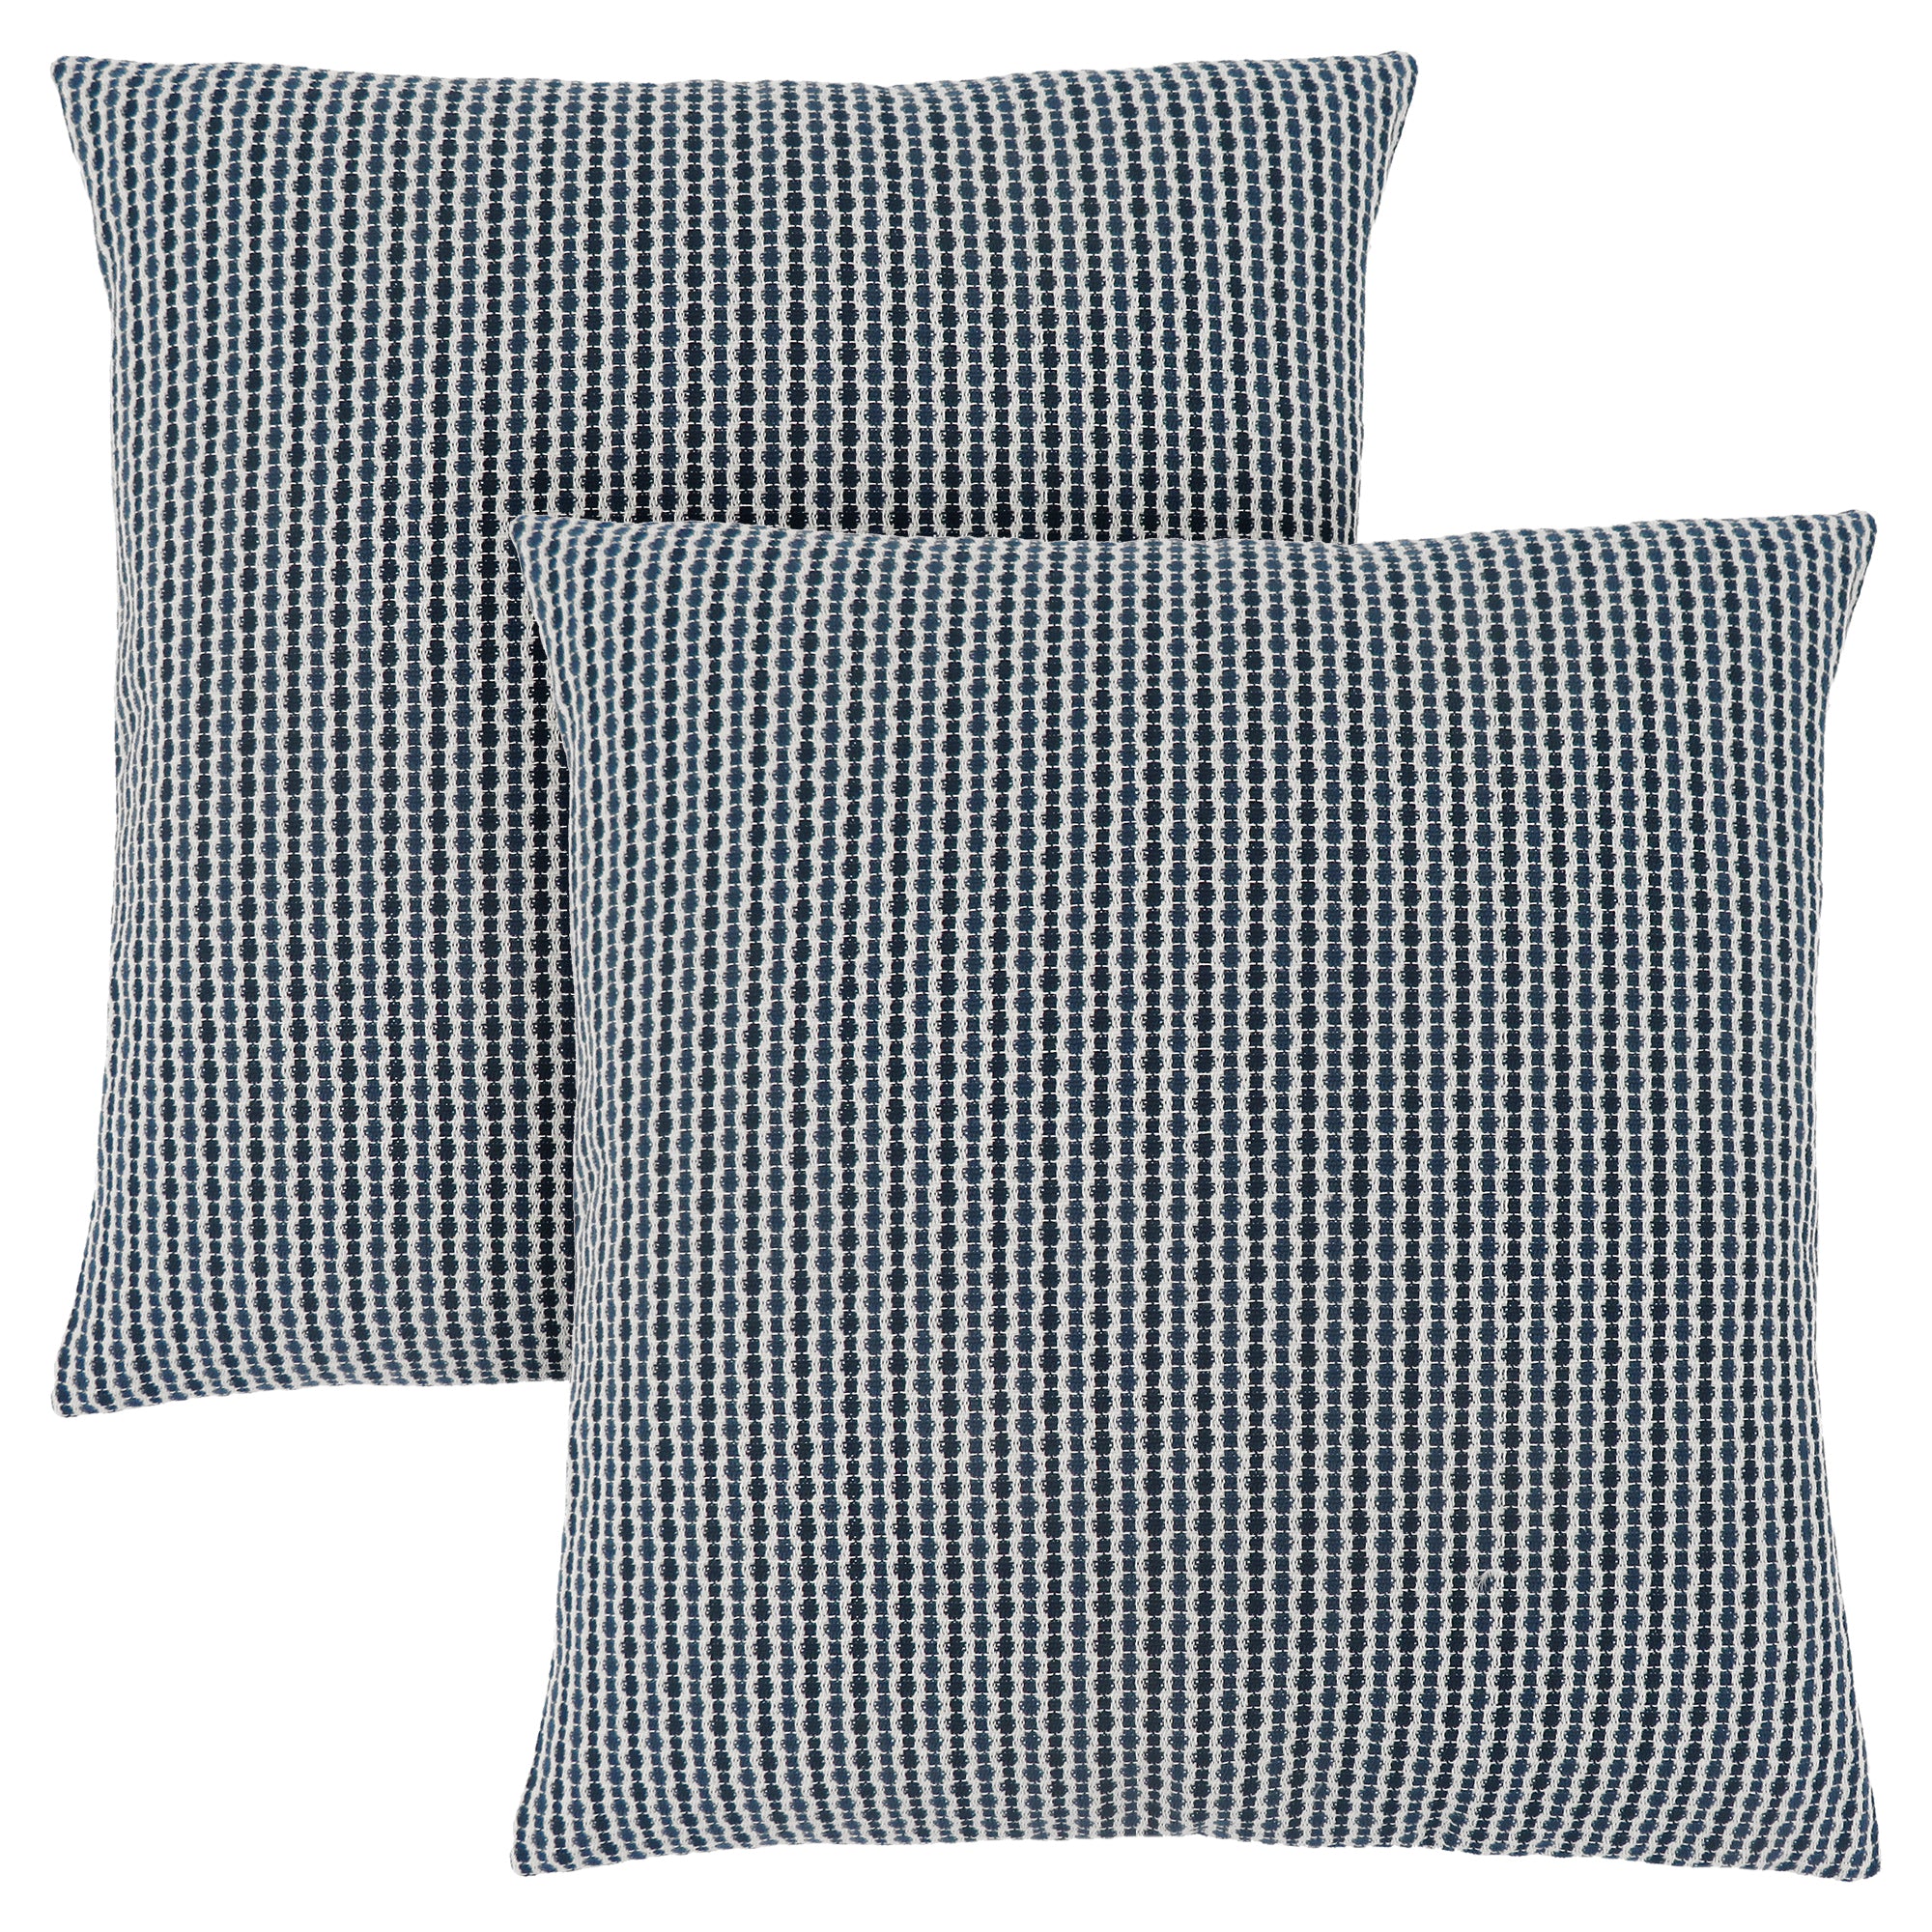 Pillow - 18X 18 / Light / Dark Blue Abstract Dot / 2Pcs